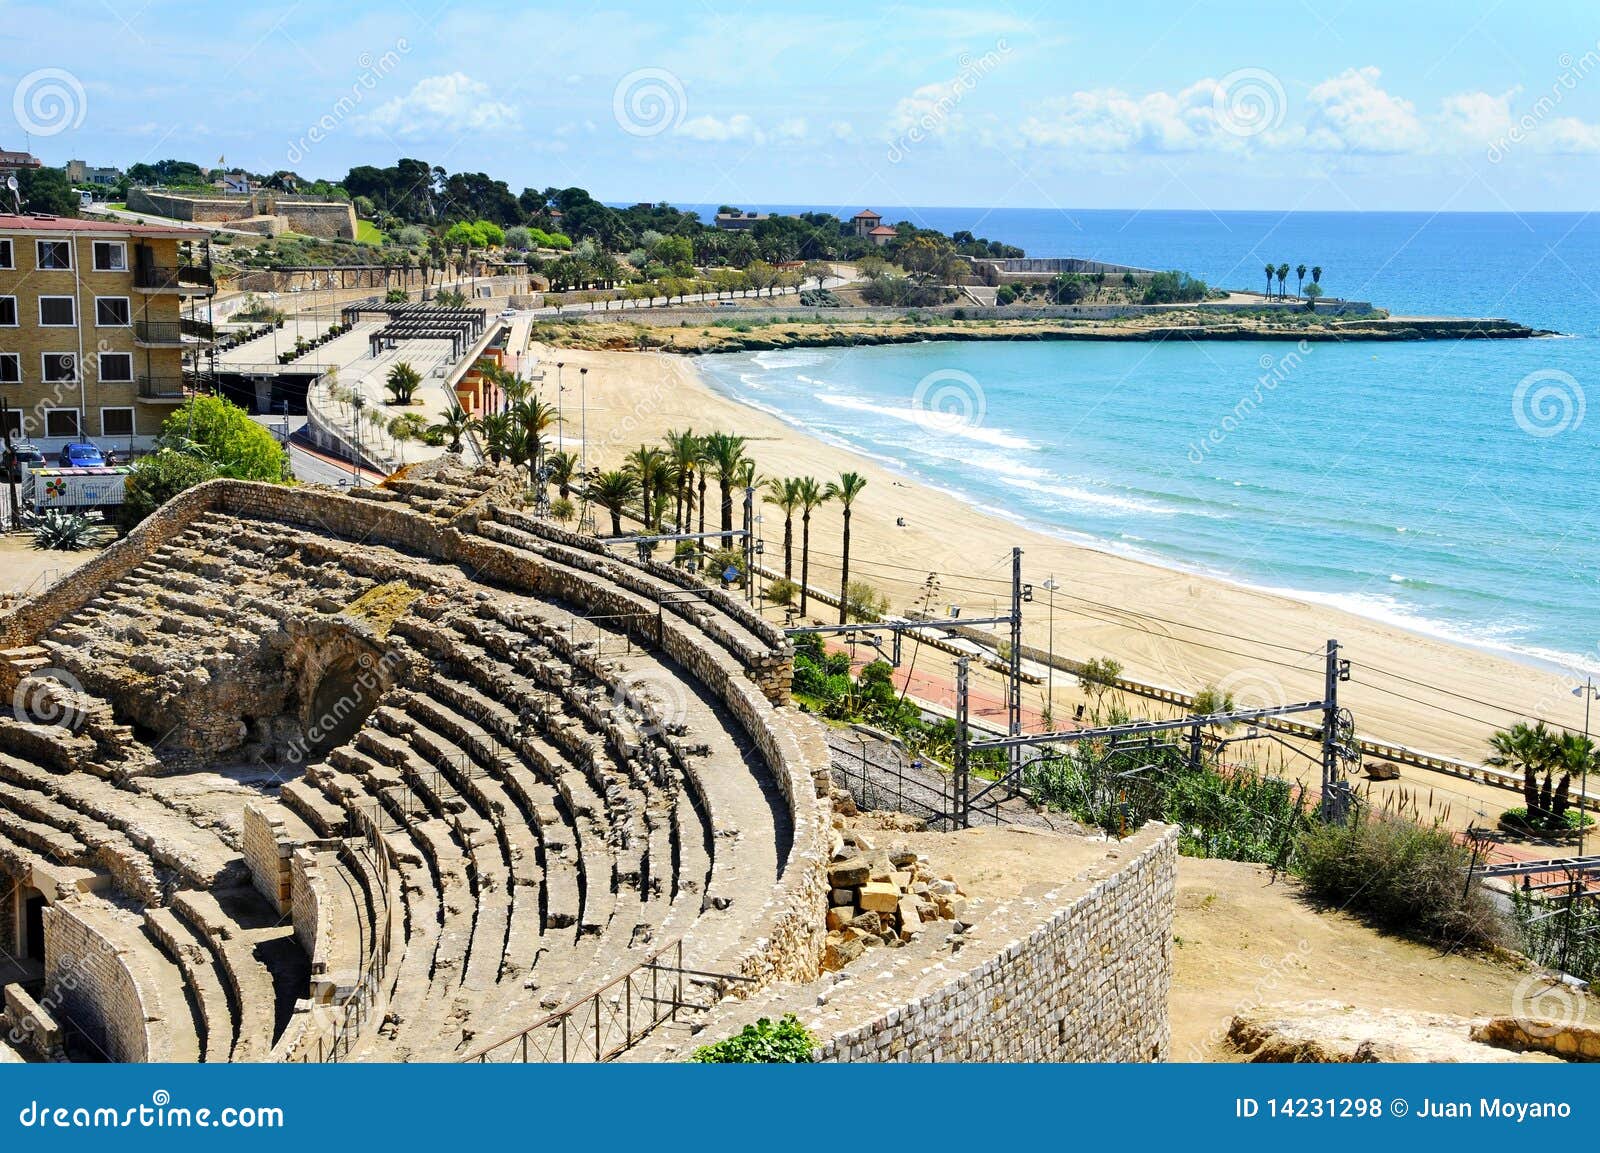 tarragona's roman amphitheater